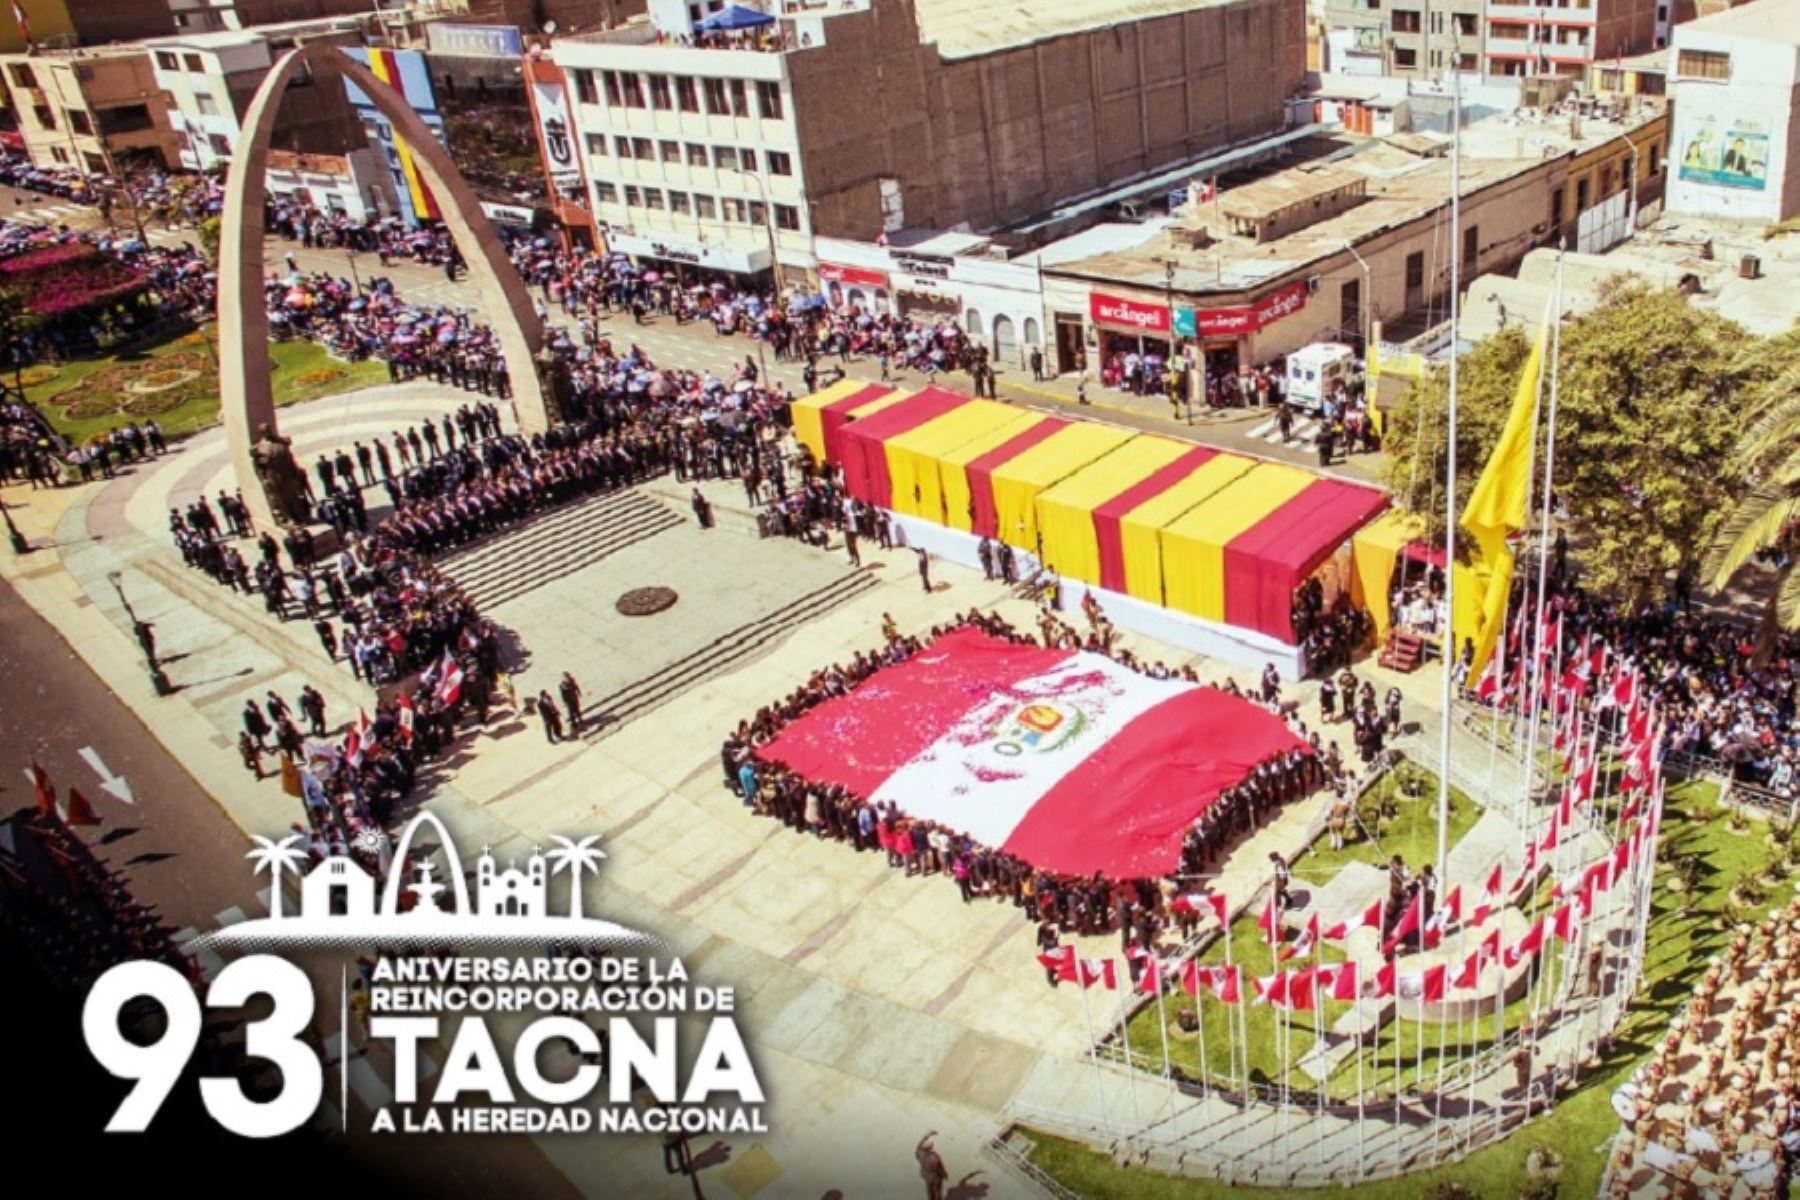 Protagonista de una de las páginas más gloriosas de nuestra historia, el departamento de Tacna celebra este 28 de agosto su 93 aniversario de reincorporación al territorio peruano.